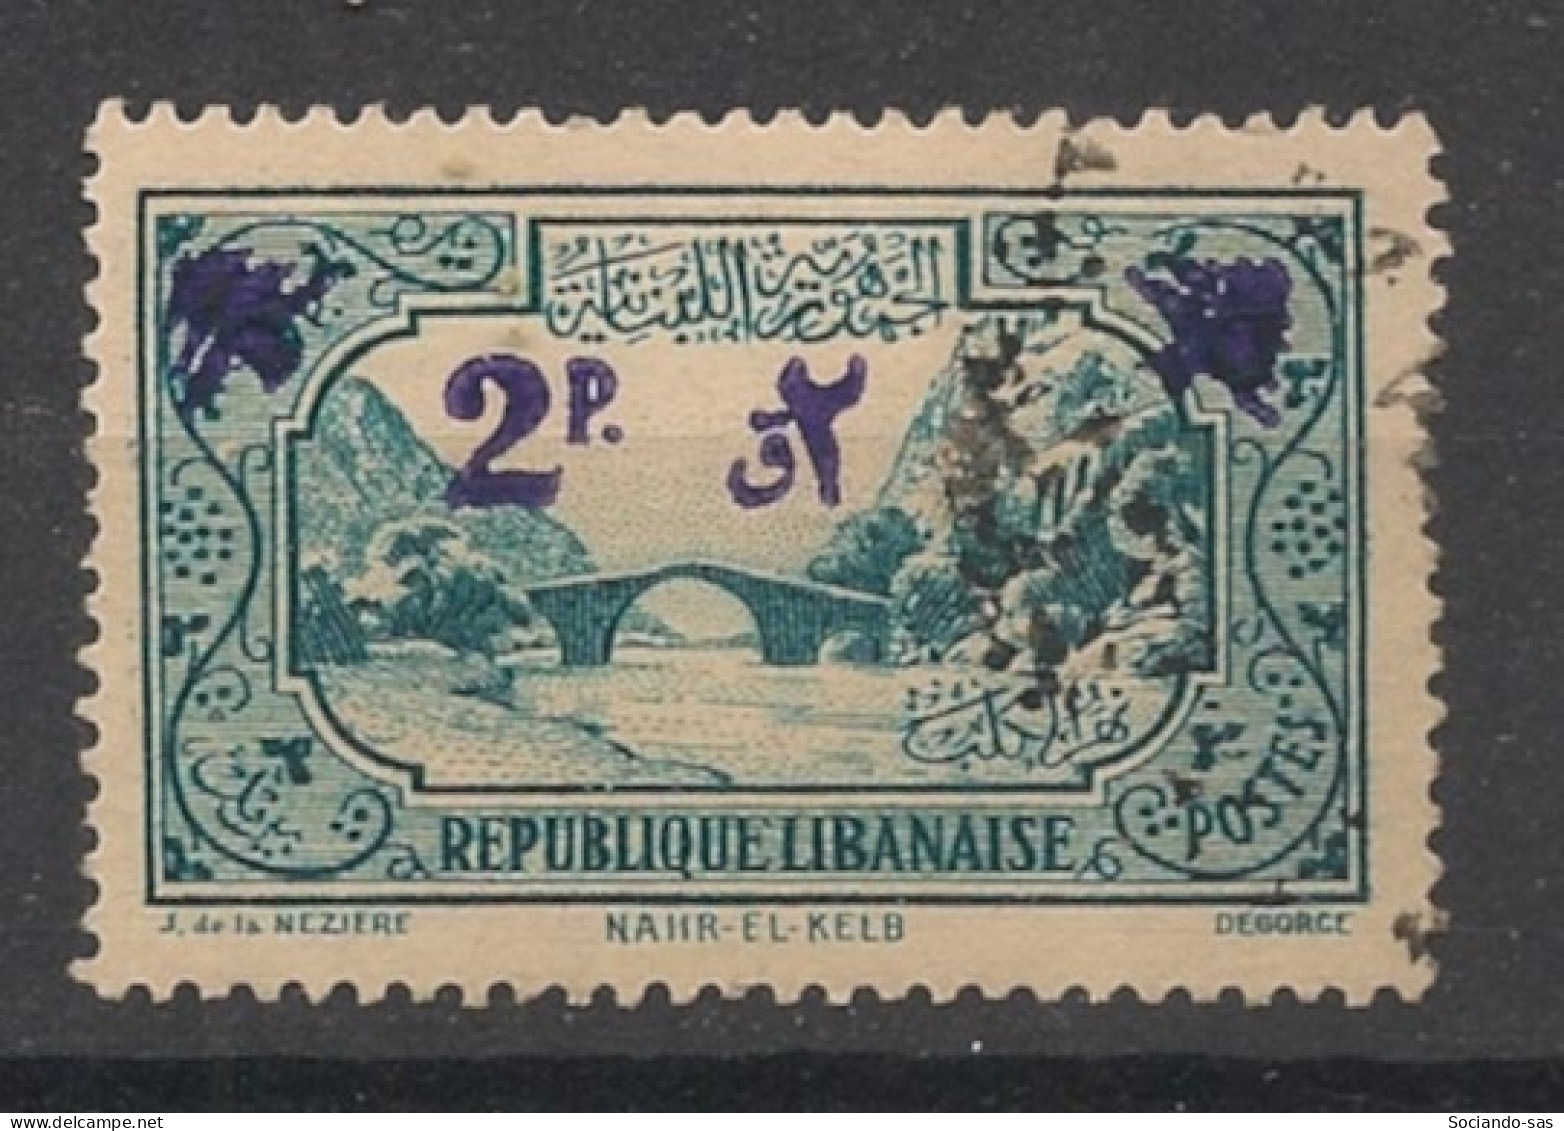 GRAND LIBAN - 1943-45 - N°YT. 181 - 2pi Sur 5pi Vert-bleu - Oblitéré / Used - Used Stamps